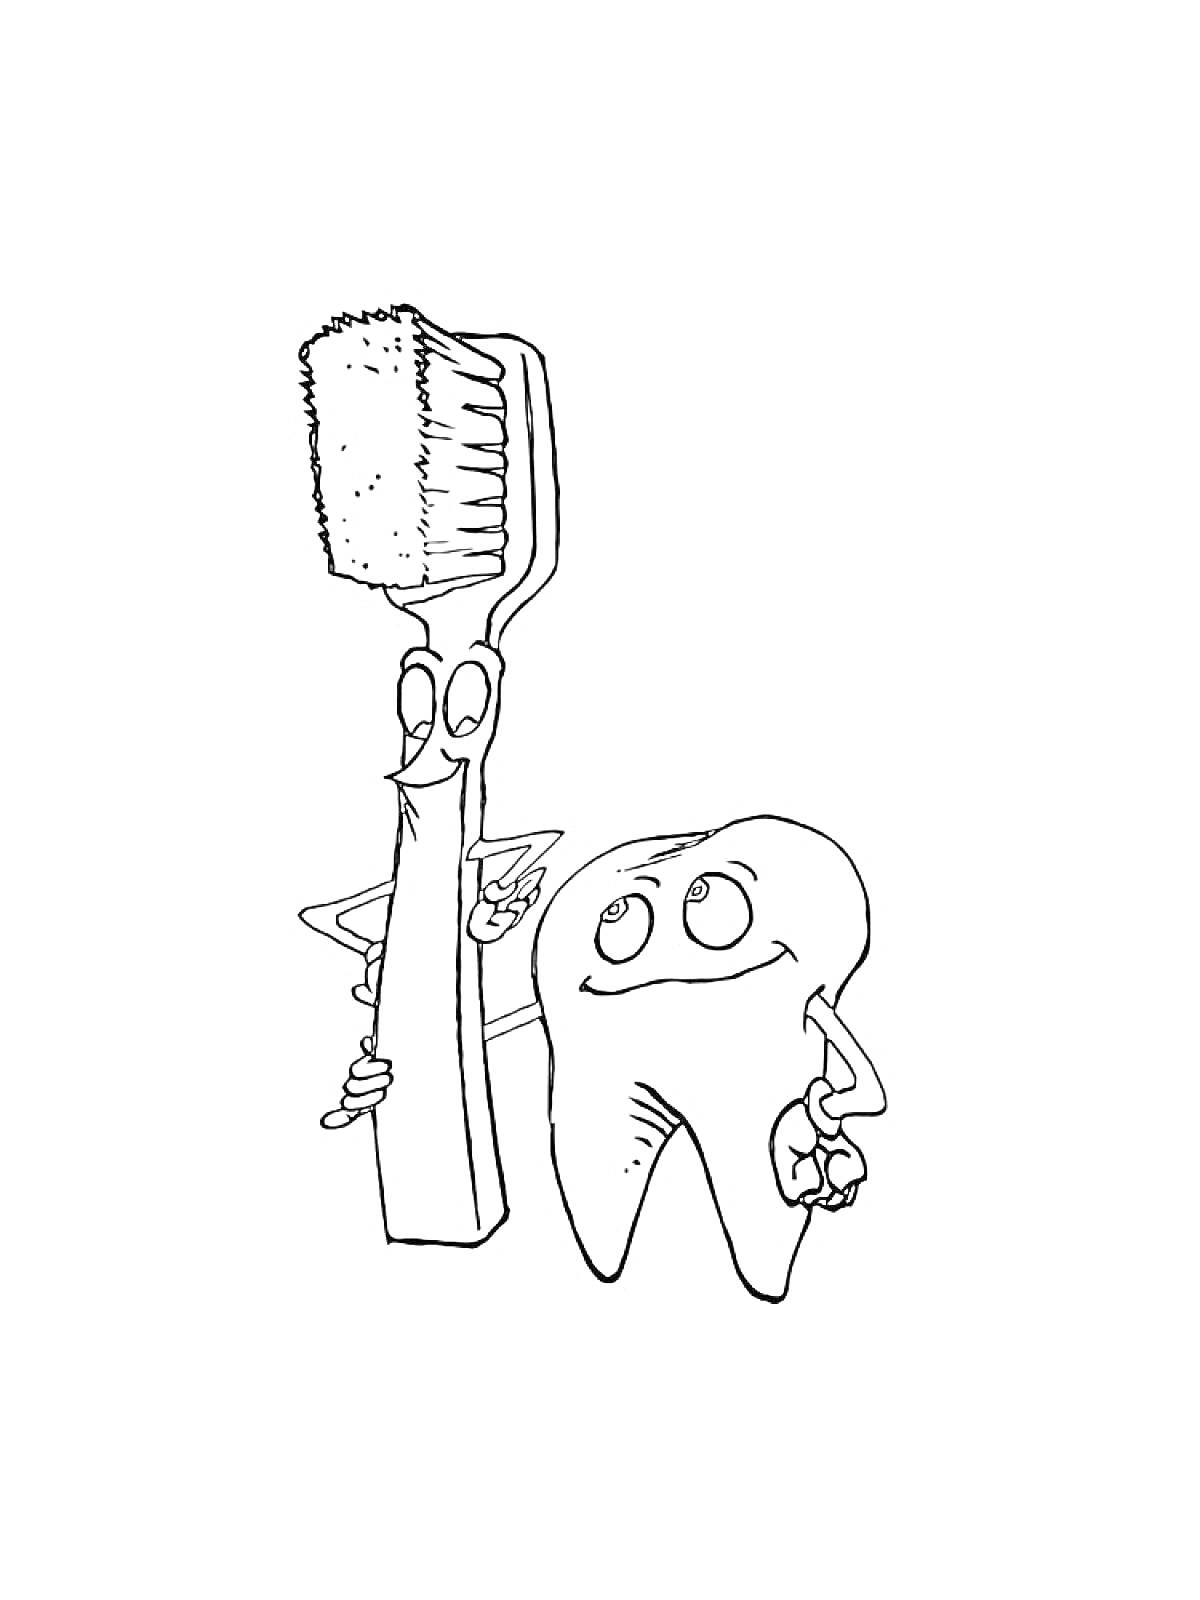 Раскраска Зубная щетка и зуб с глазами и руками. Зубная щетка придерживает руку на зубе.